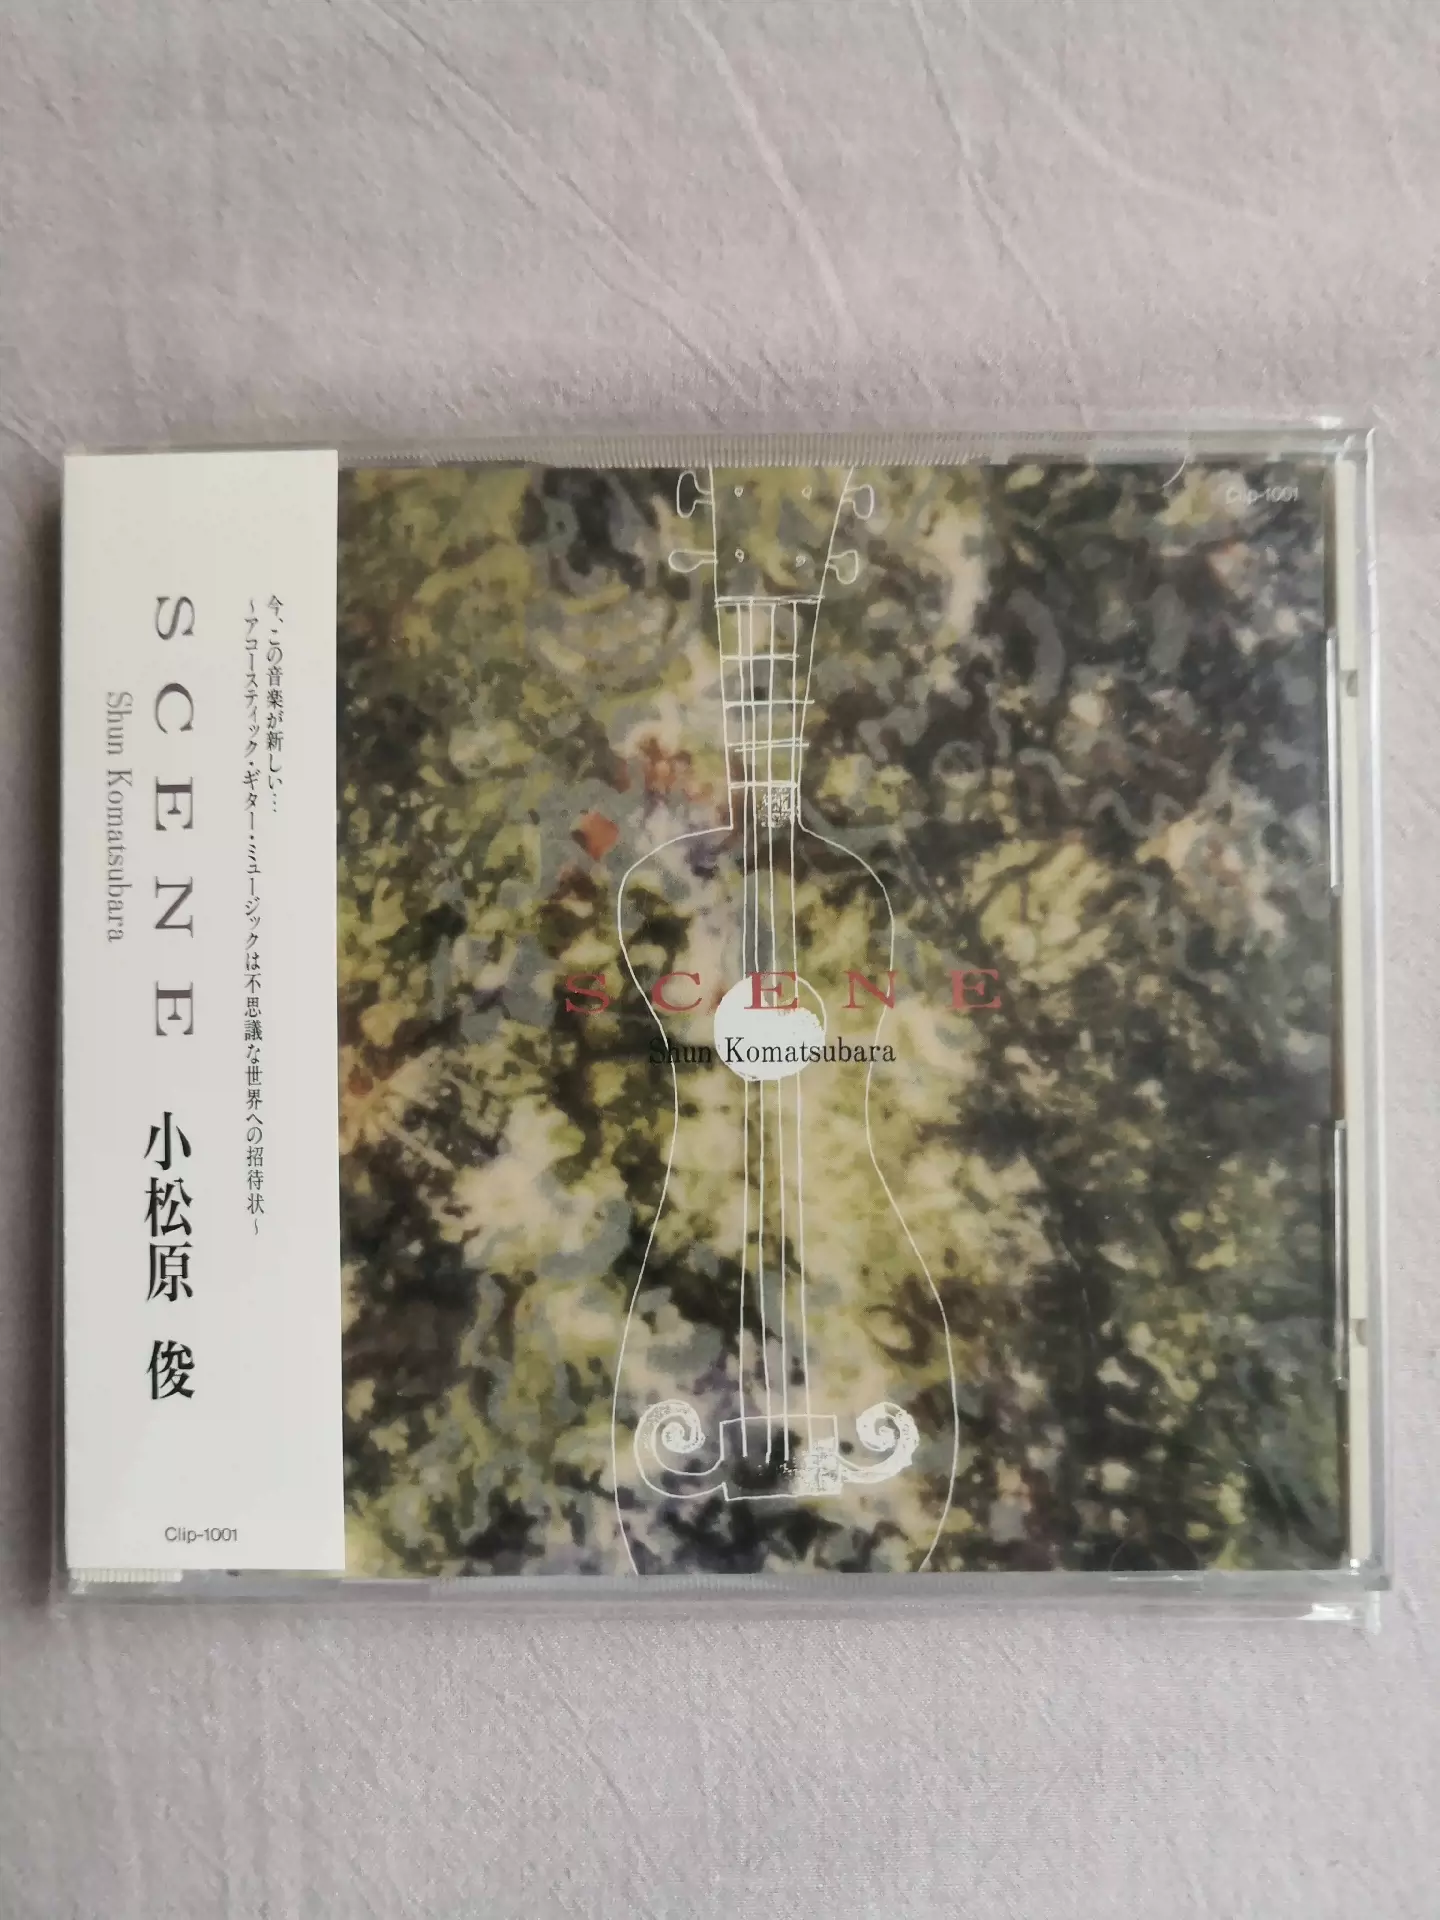 小松原俊亲笔签名CD专辑《SCENE》 首版首批94日版-Taobao